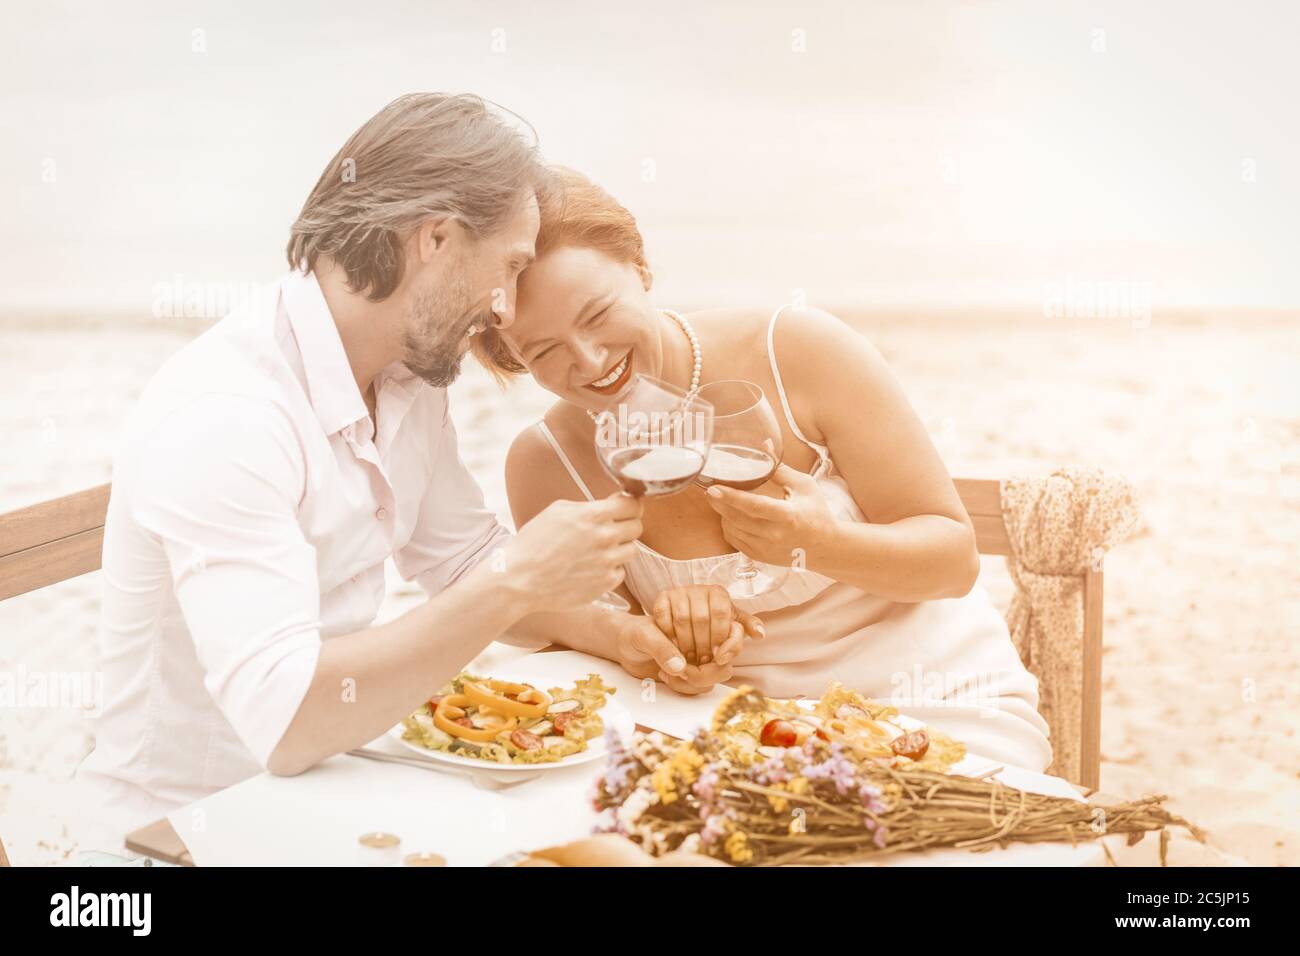 Charmant couple d'âge mûr buvant du vin au bord de la mer. Deux personnes caucasiennes souriantes passent du temps ensemble dans un café de plage. Concept d'amour. Concept anniversaire Banque D'Images